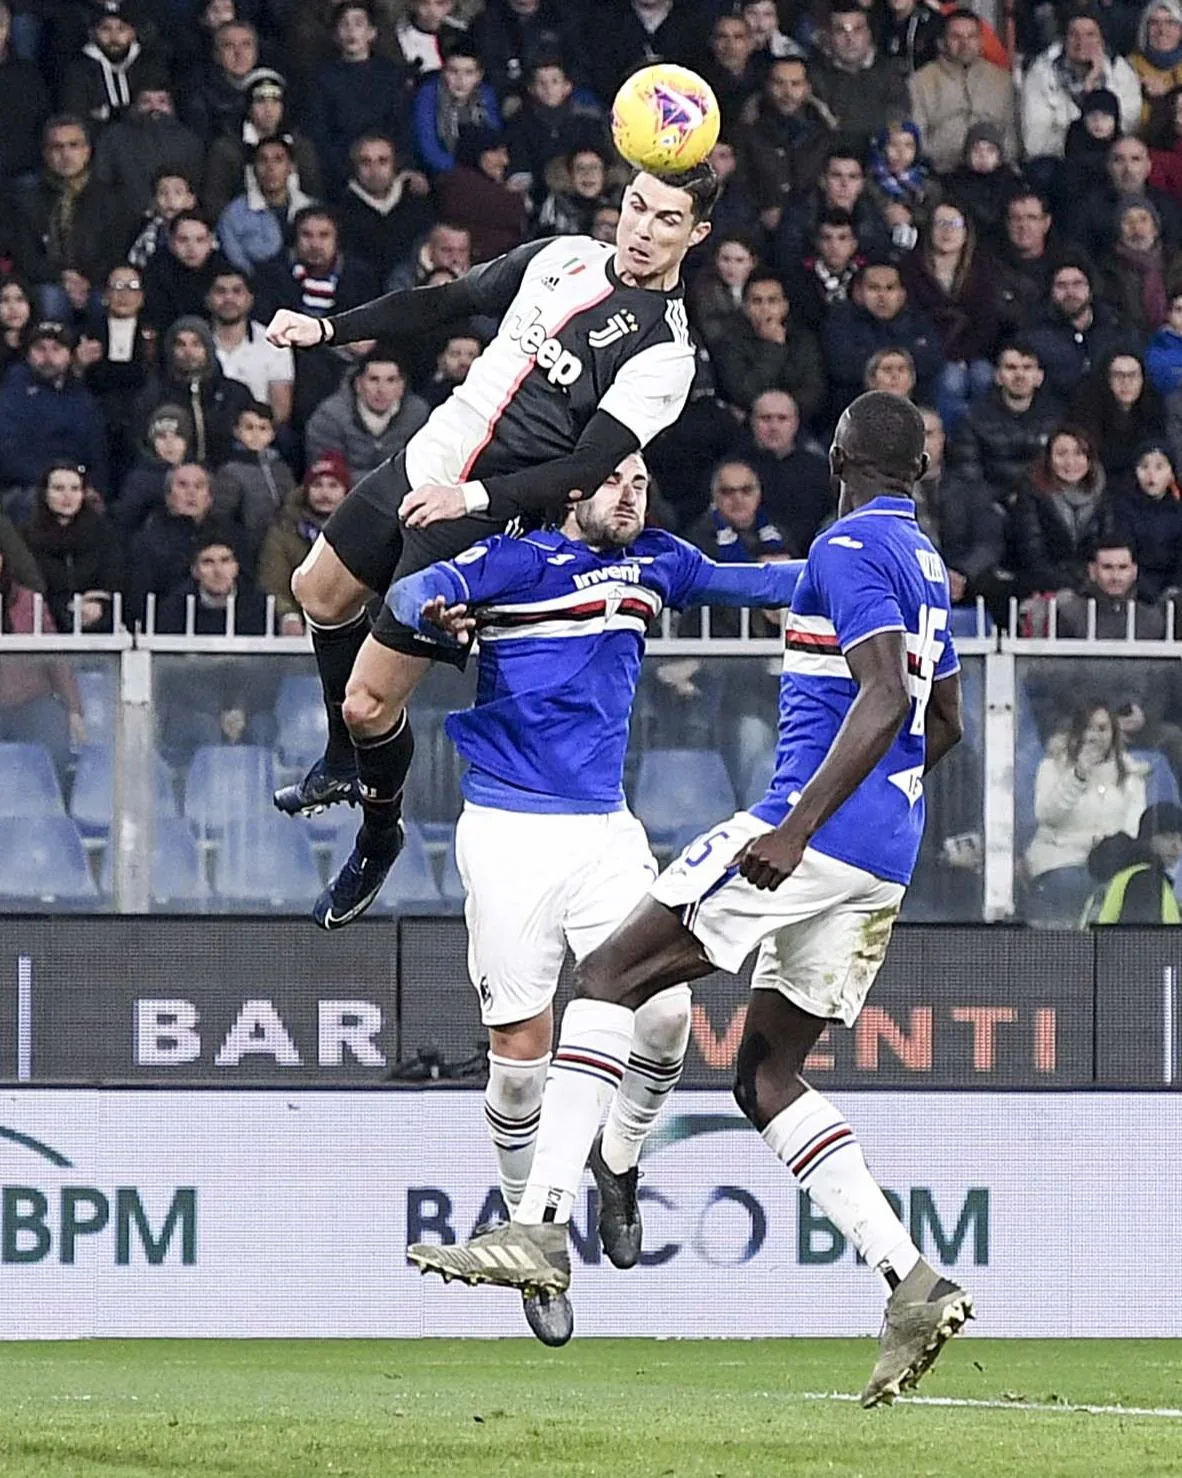 ronaldo leap headed goal sampdoria